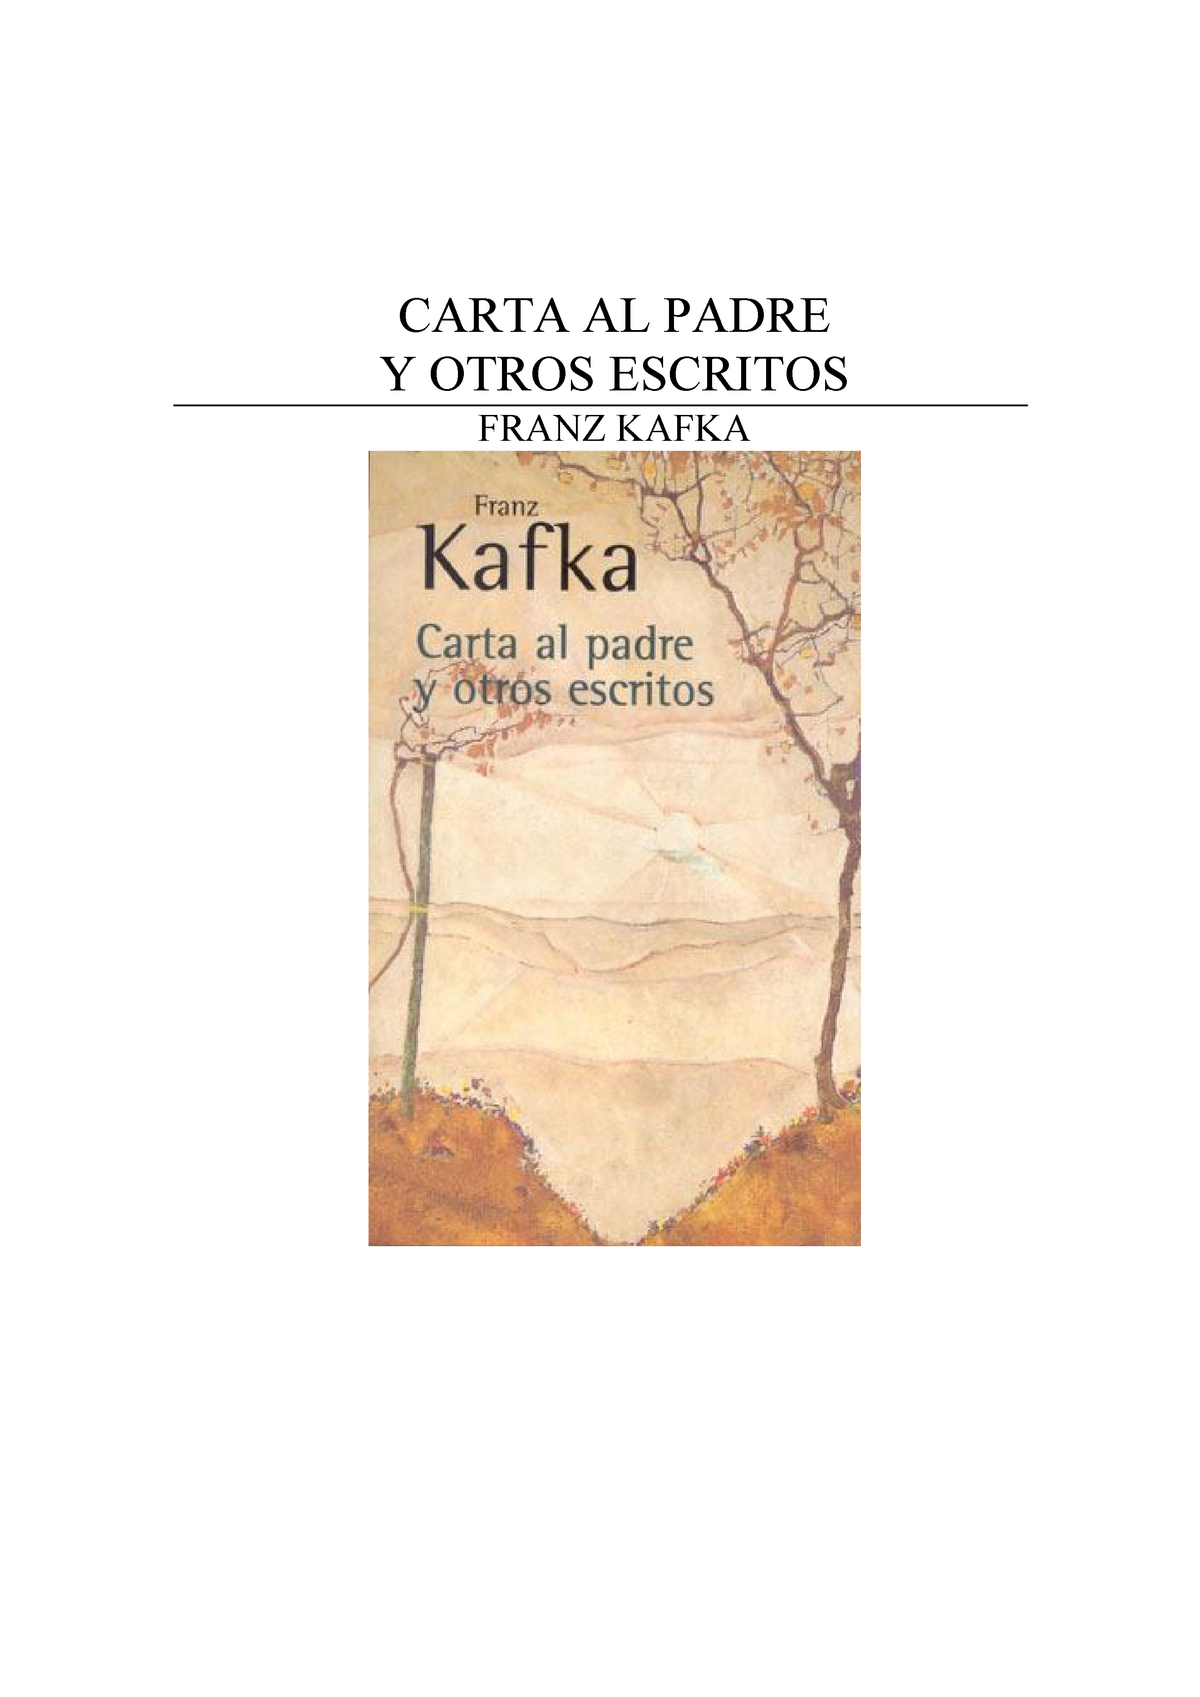 Ensayo del libro Carta al padre de Franz Kafka - CARTA AL PADRE Y OTROS  ESCRITOS FRANZ KAFKA Indice - Studocu